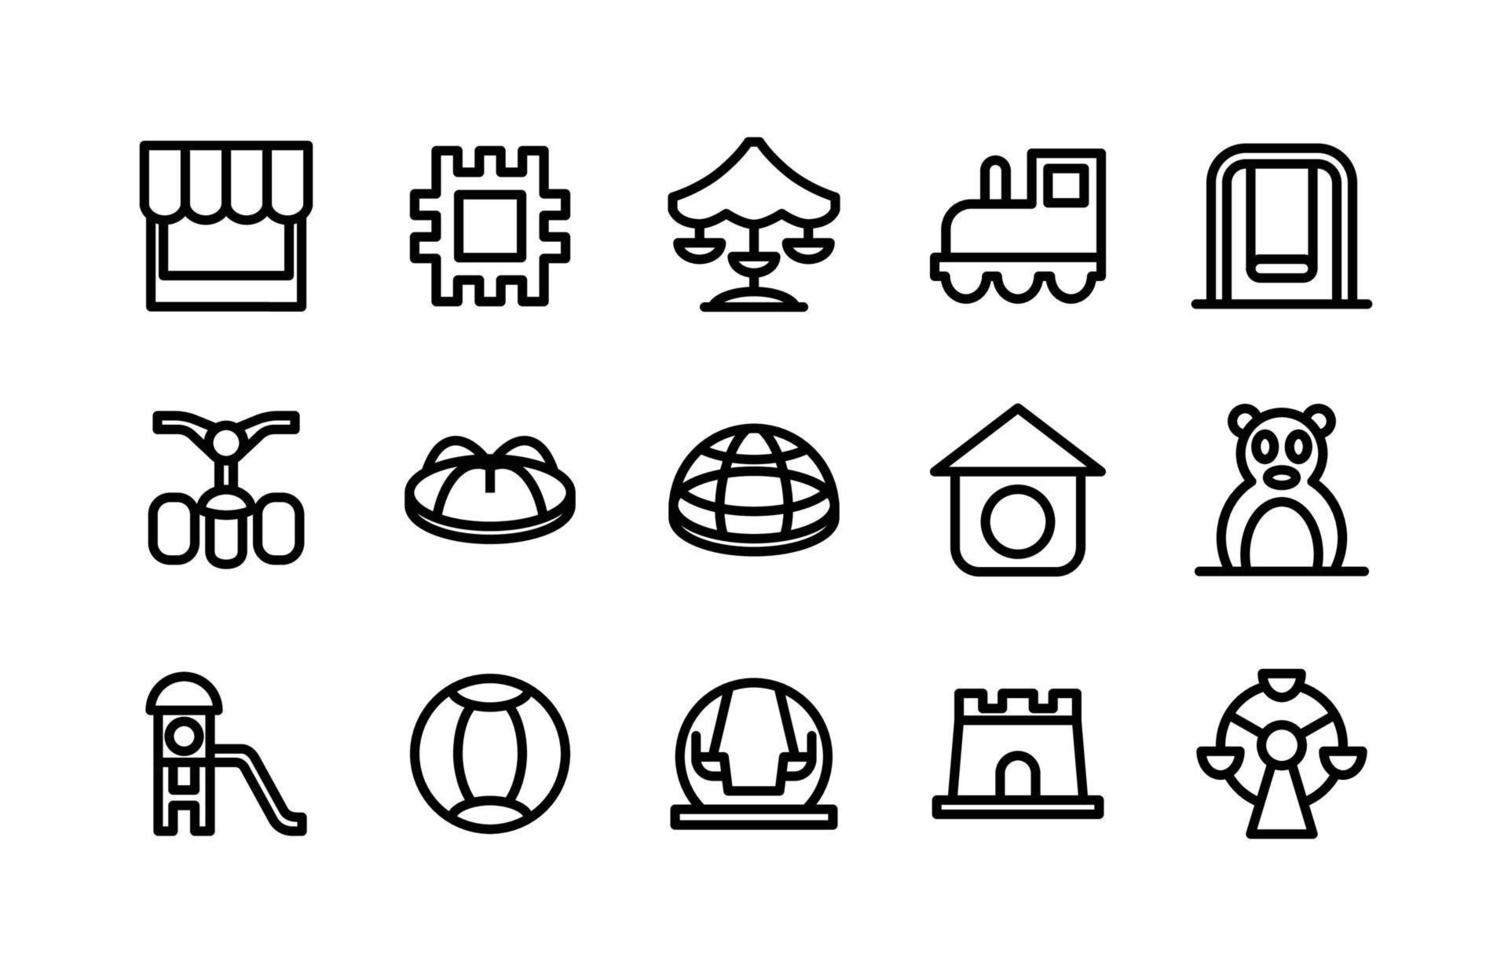 Symbole für Spielplatzlinien, darunter Shop, Puzzle, Karussell, Zug, Schaukel, Fahrrad, Karussell, Kuppel, Vogelhaus, Tor, Rutsche, Ball, Schaukel, Schloss, Karussell vektor